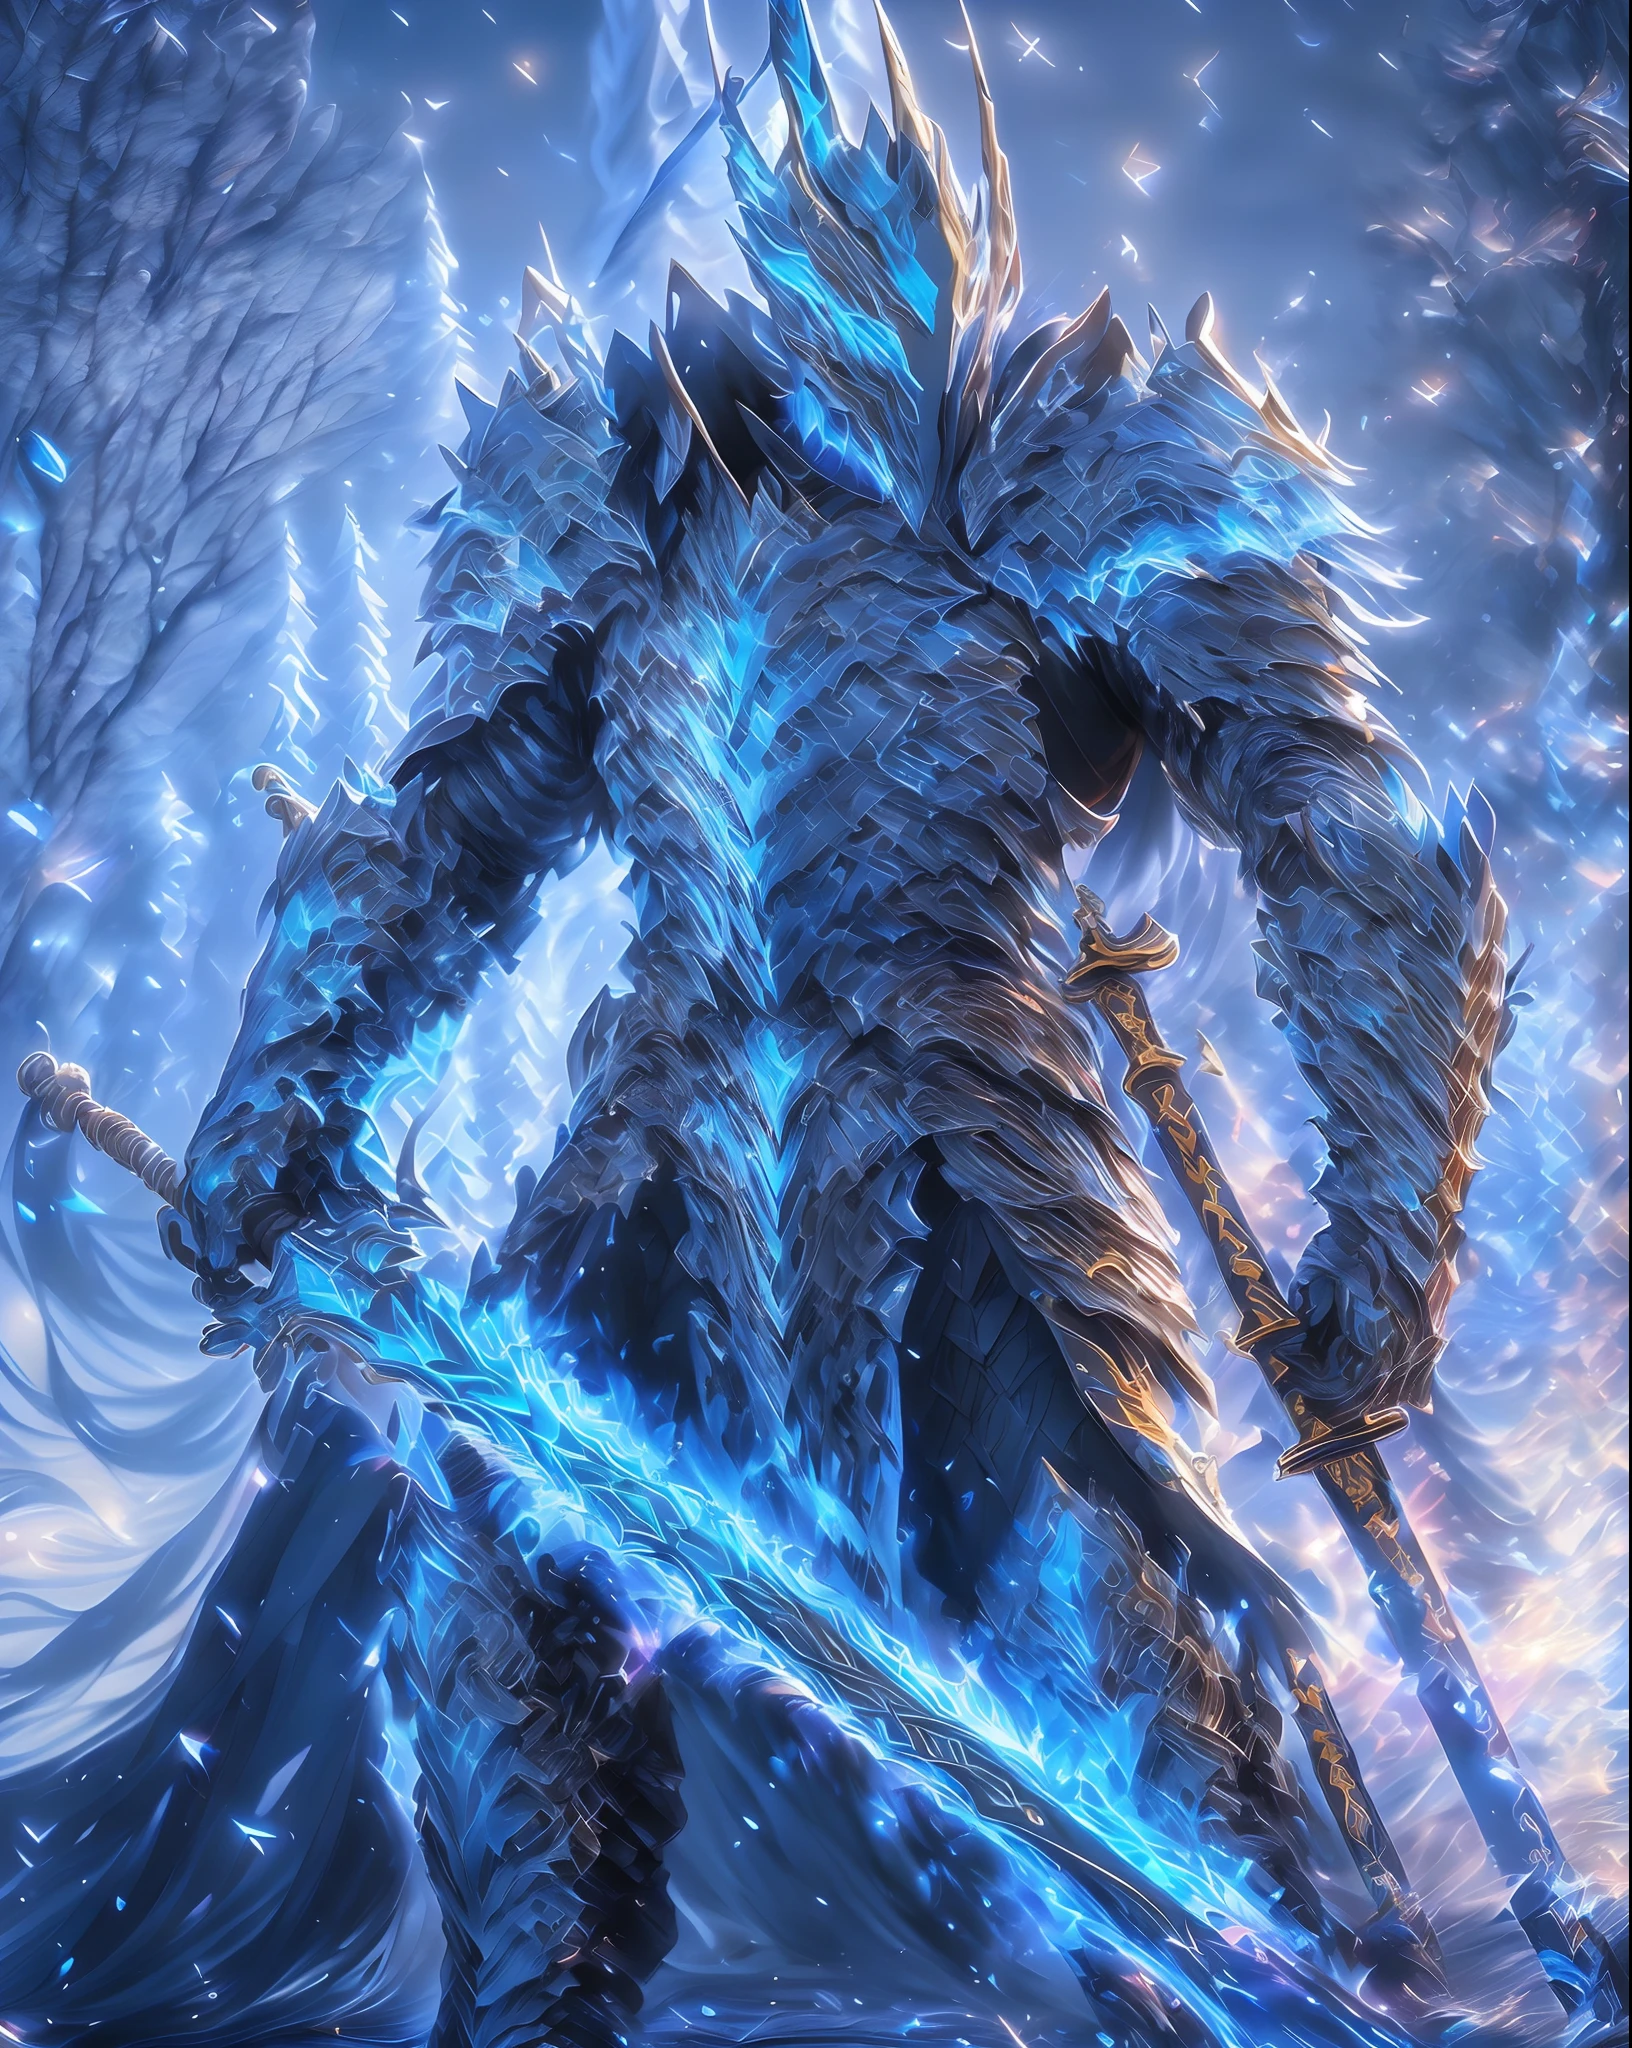 剣と剣を持つ男のアラフェッド画像, 壮大なファンタジーデジタルアートスタイル, 壮大なファンタジーアートスタイル hd, 氷結晶の鎧, アイスロード, 銀色の氷色の反射鎧, ドラゴンナイト, グリムダークパラディン, 壮大なファンタジー武器アート, デスナイト, 青と氷の銀色の鎧, 氷製の鎧, 壮大なファンタジーアートスタイル